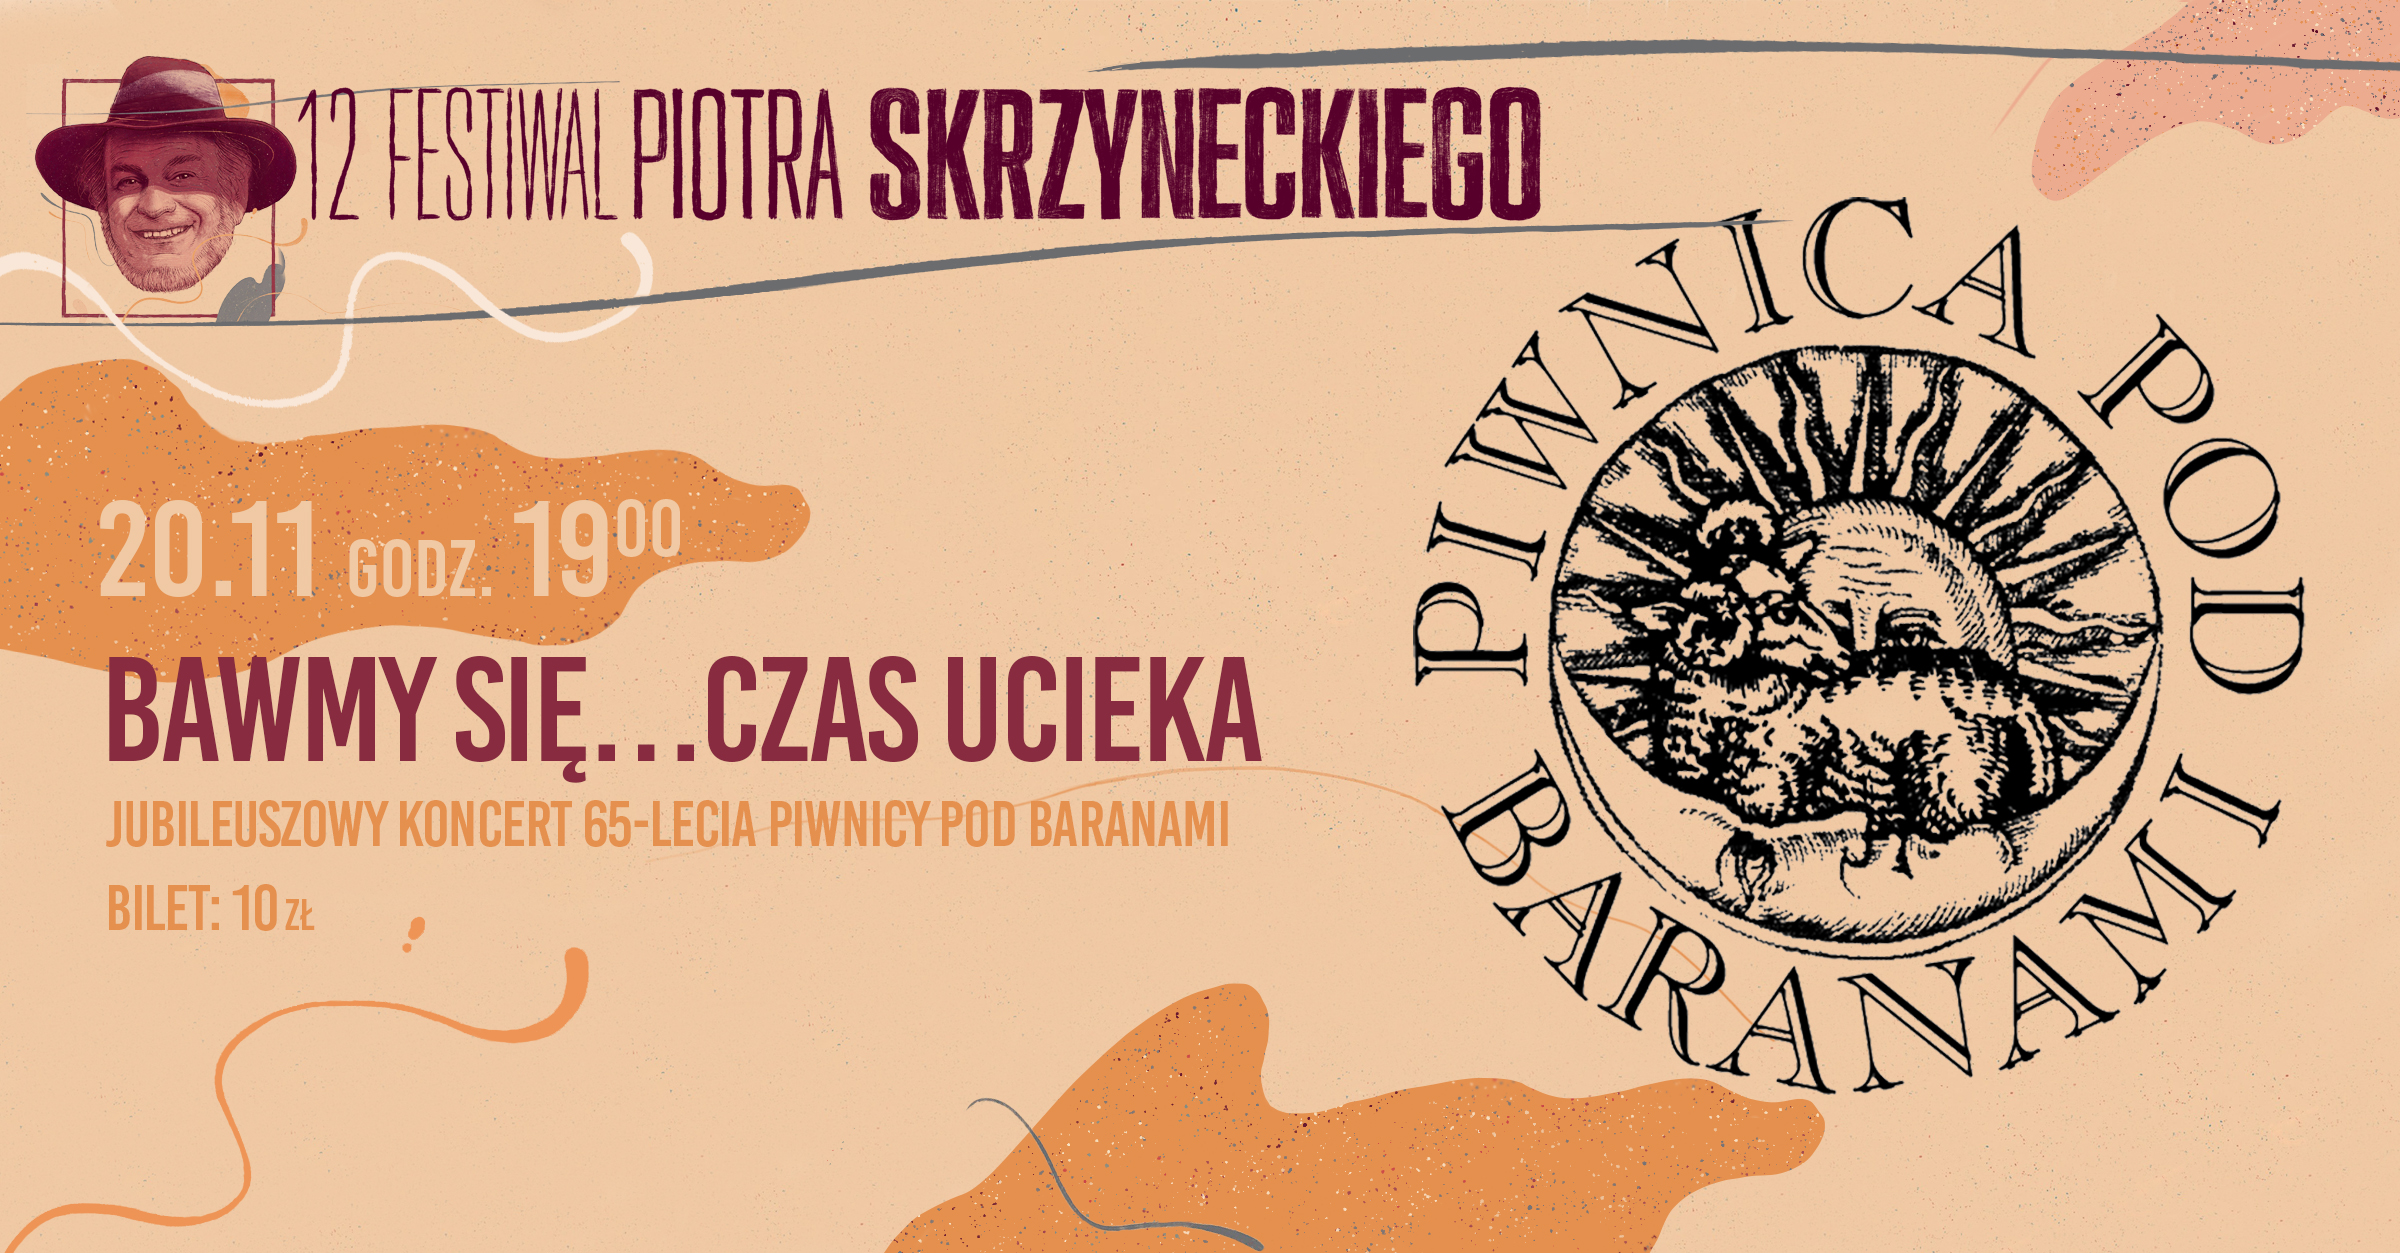 Piwnica Pod Baranami | koncert galowy | Festiwal Piotra Skrzyneckiego